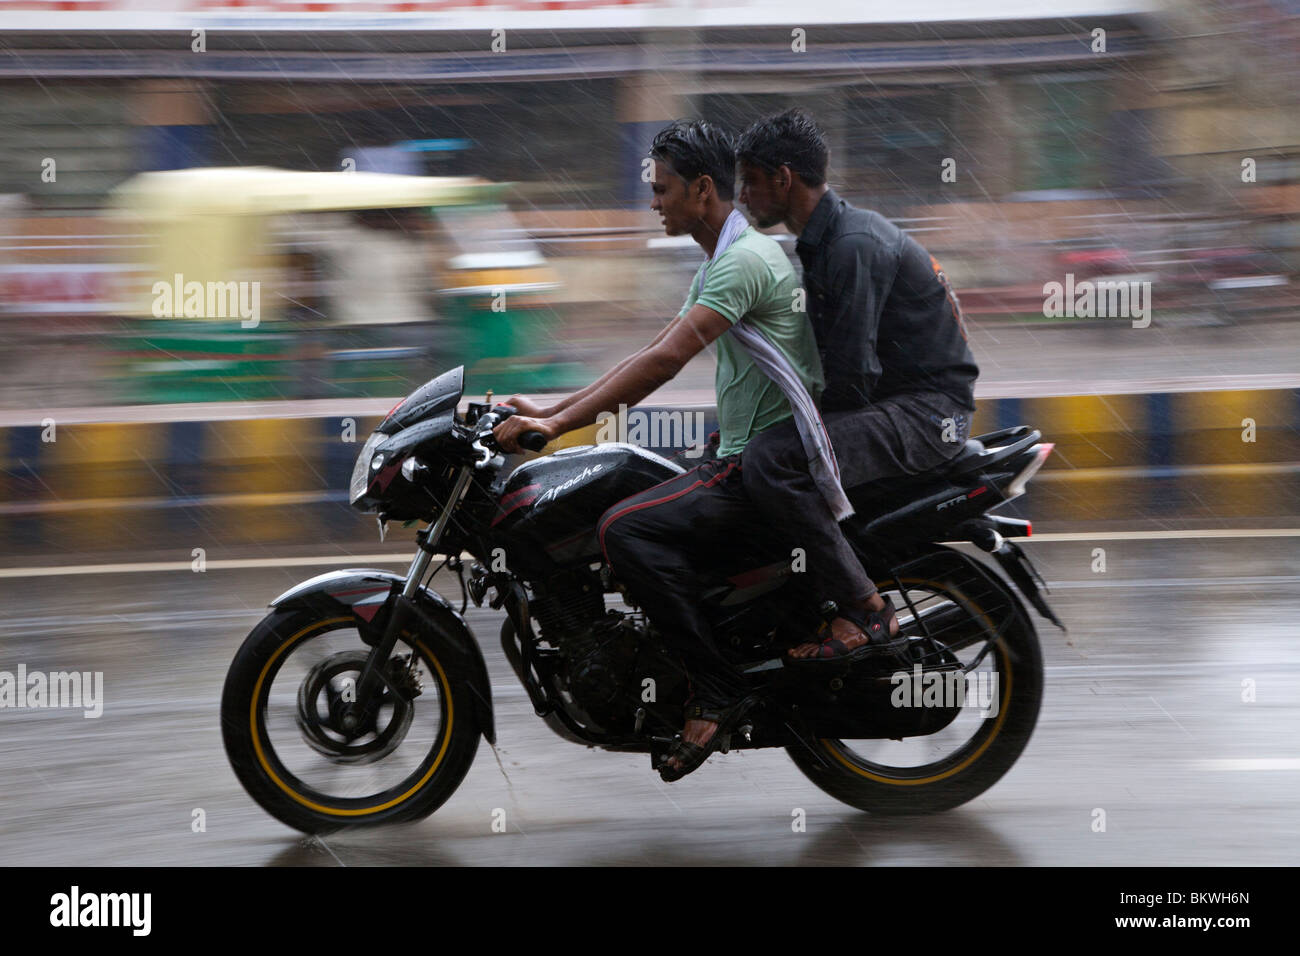 Indien, Uttar Pradesh, Agra, Motorradfahrer und Beifahrer im schweren Monsun-Regen Stockfoto